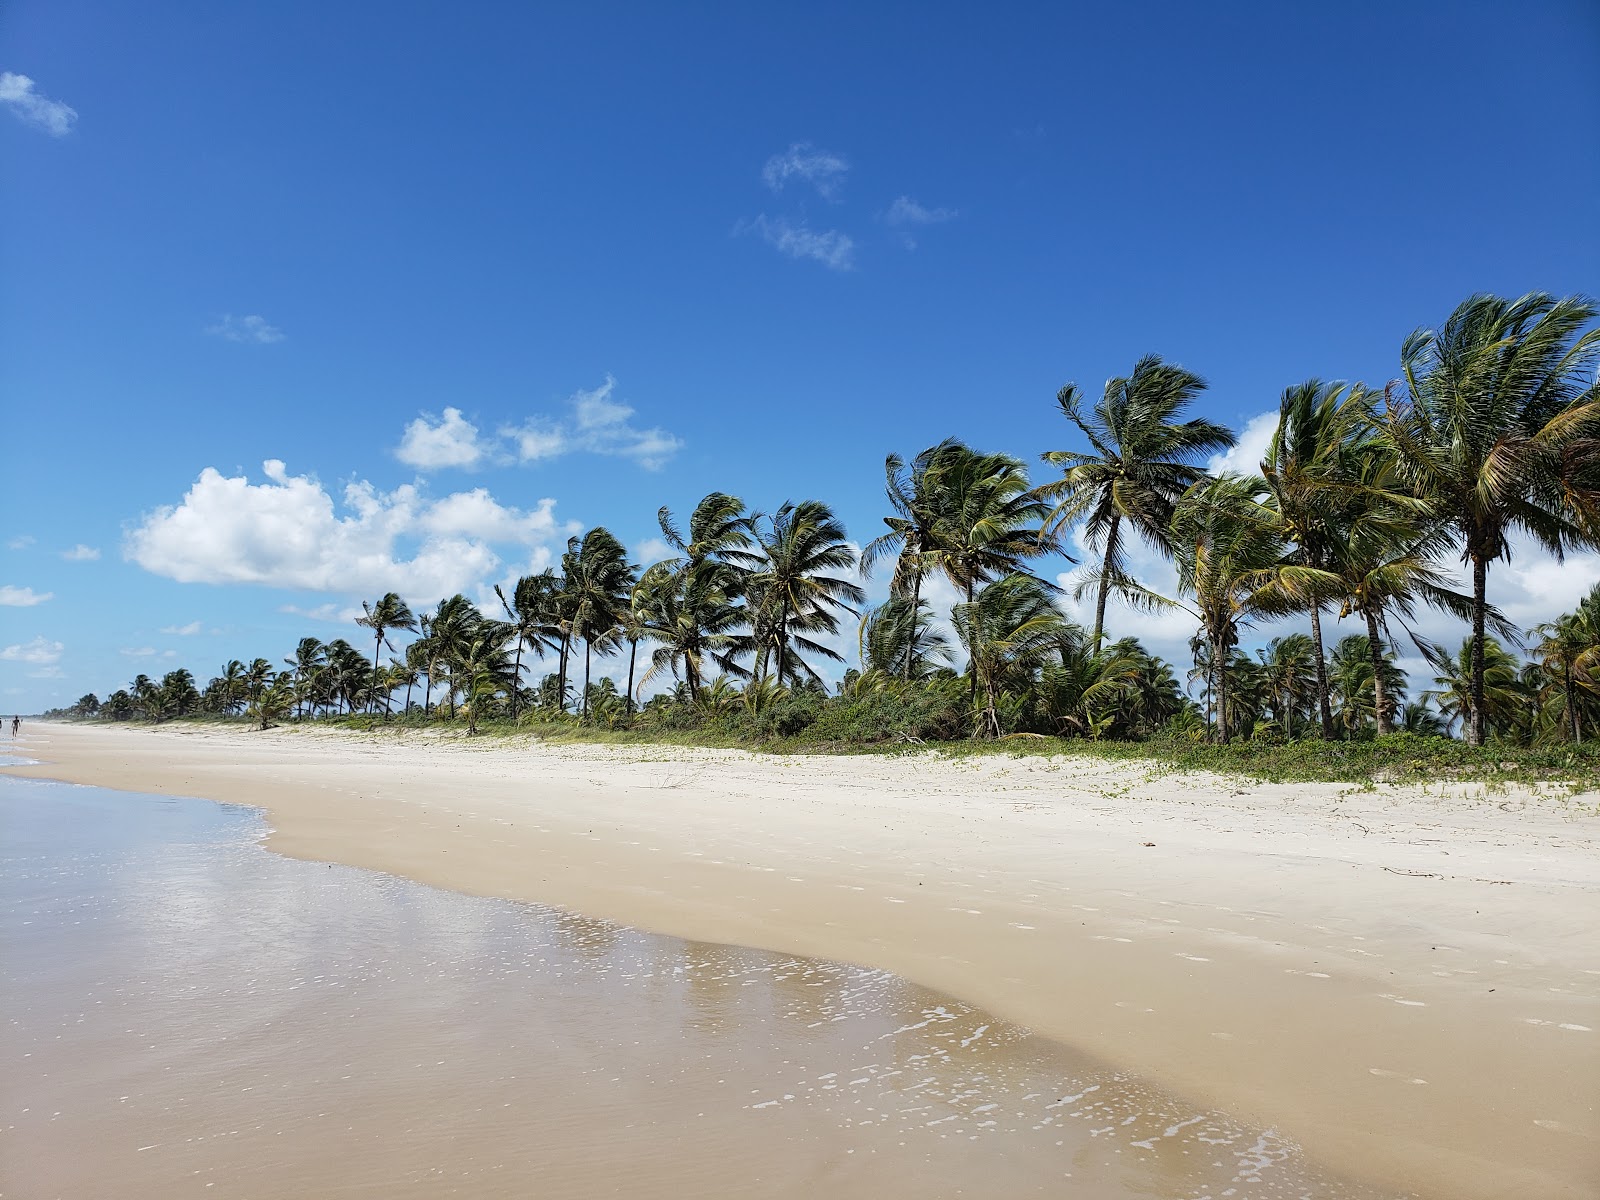 Foto von Praia da ilha de Comandatuba - beliebter Ort unter Entspannungskennern